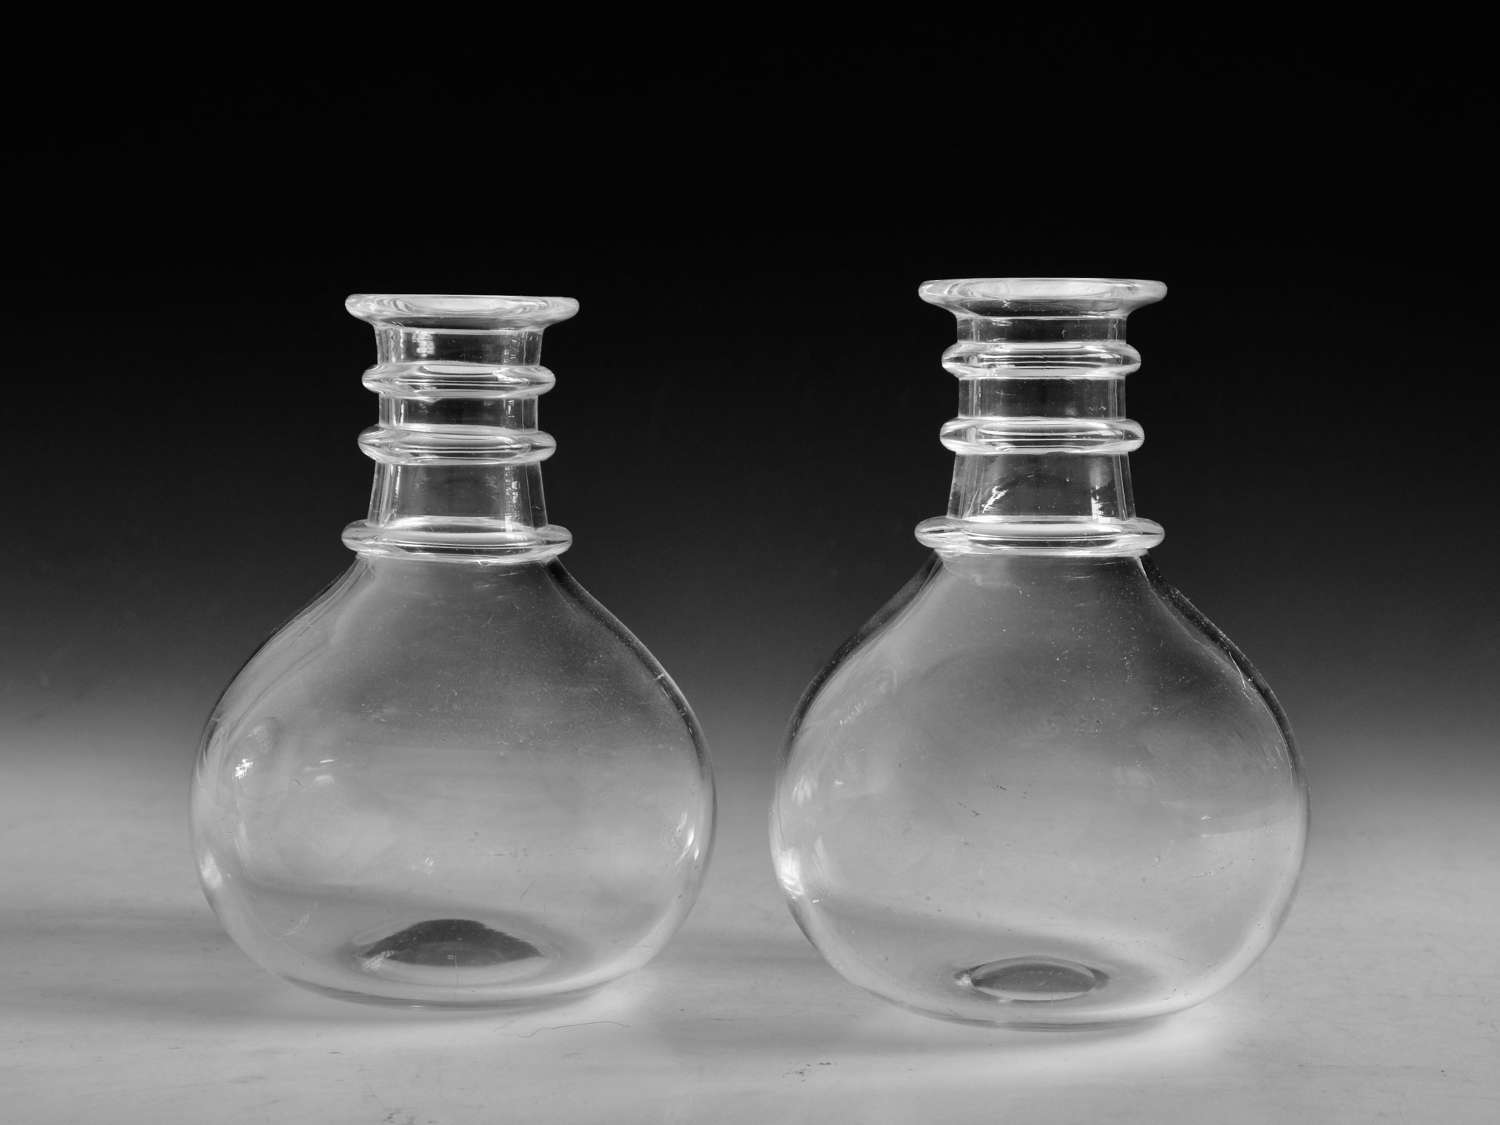 Antique glass carafes pair English c1820